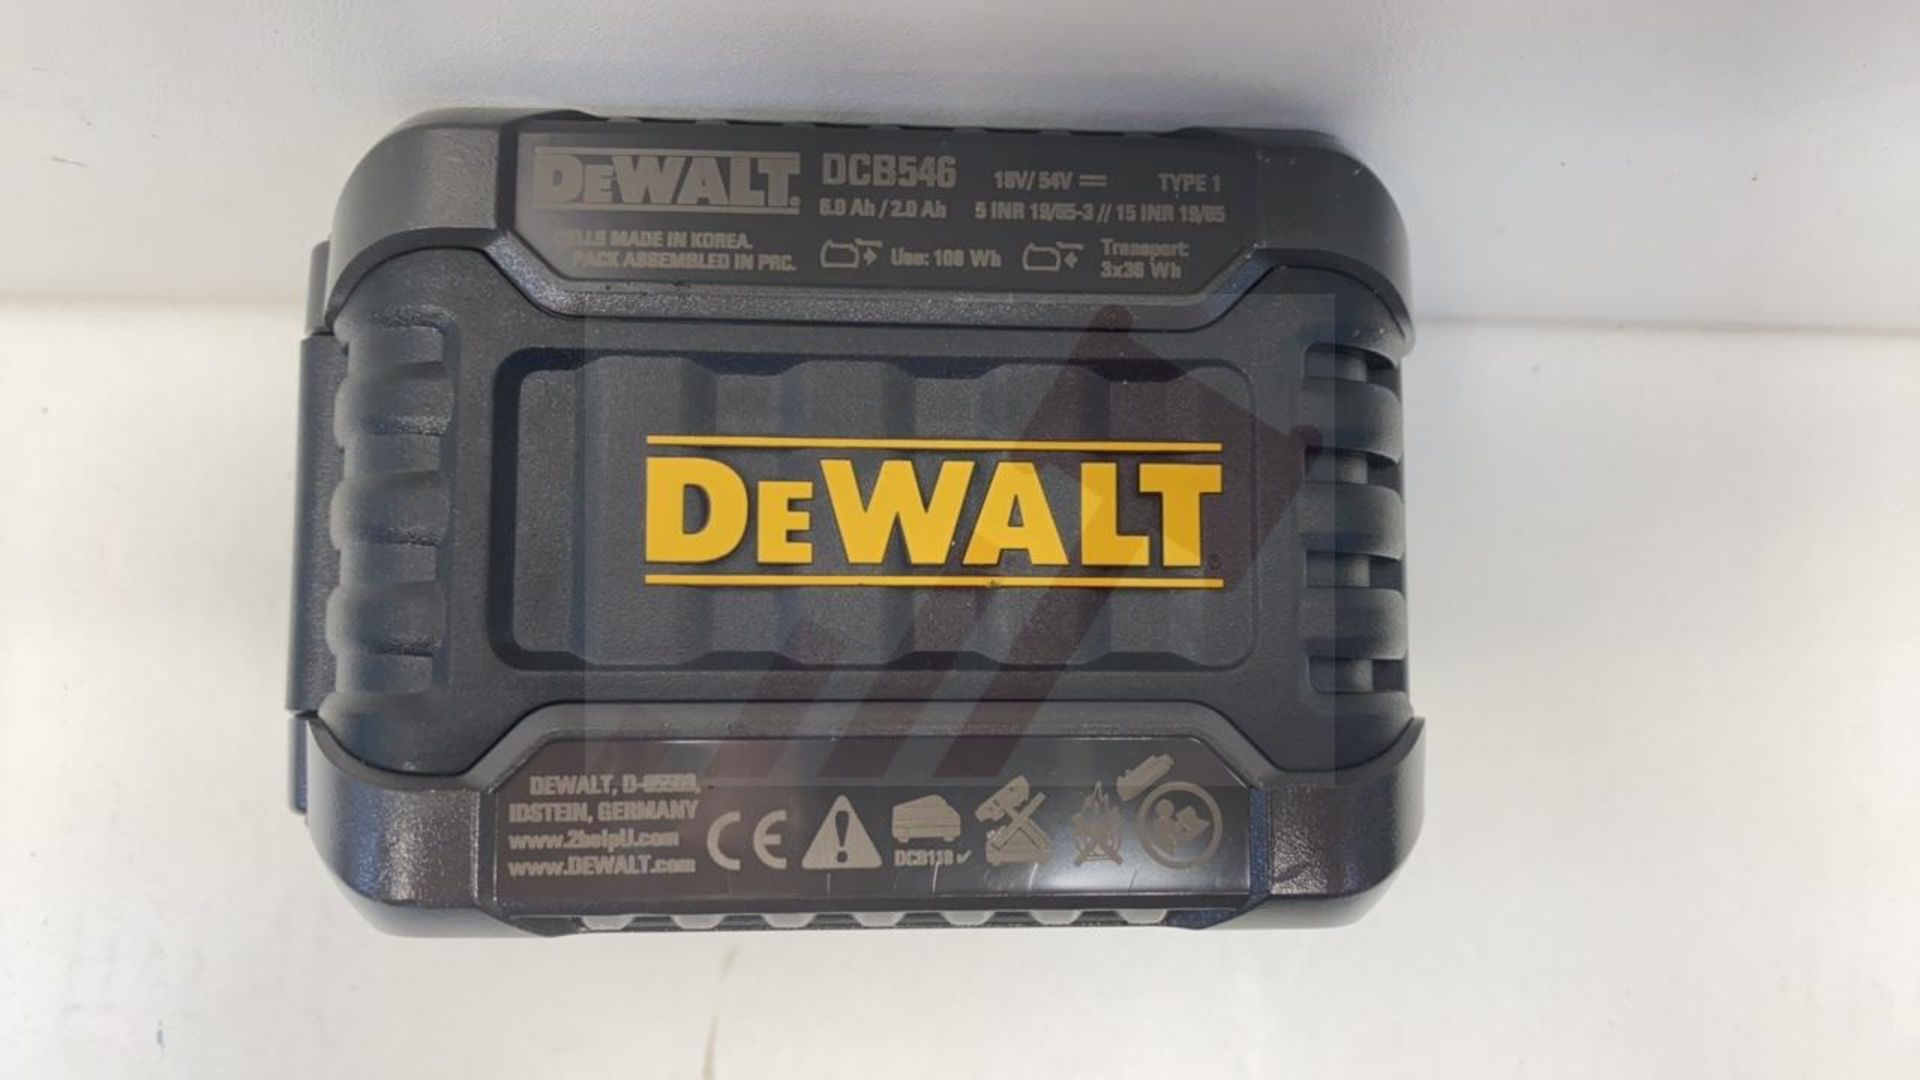 DeWalt DCB546 18v / 54v XR FLEXVOLT 6.0Ah Battery - Image 3 of 4